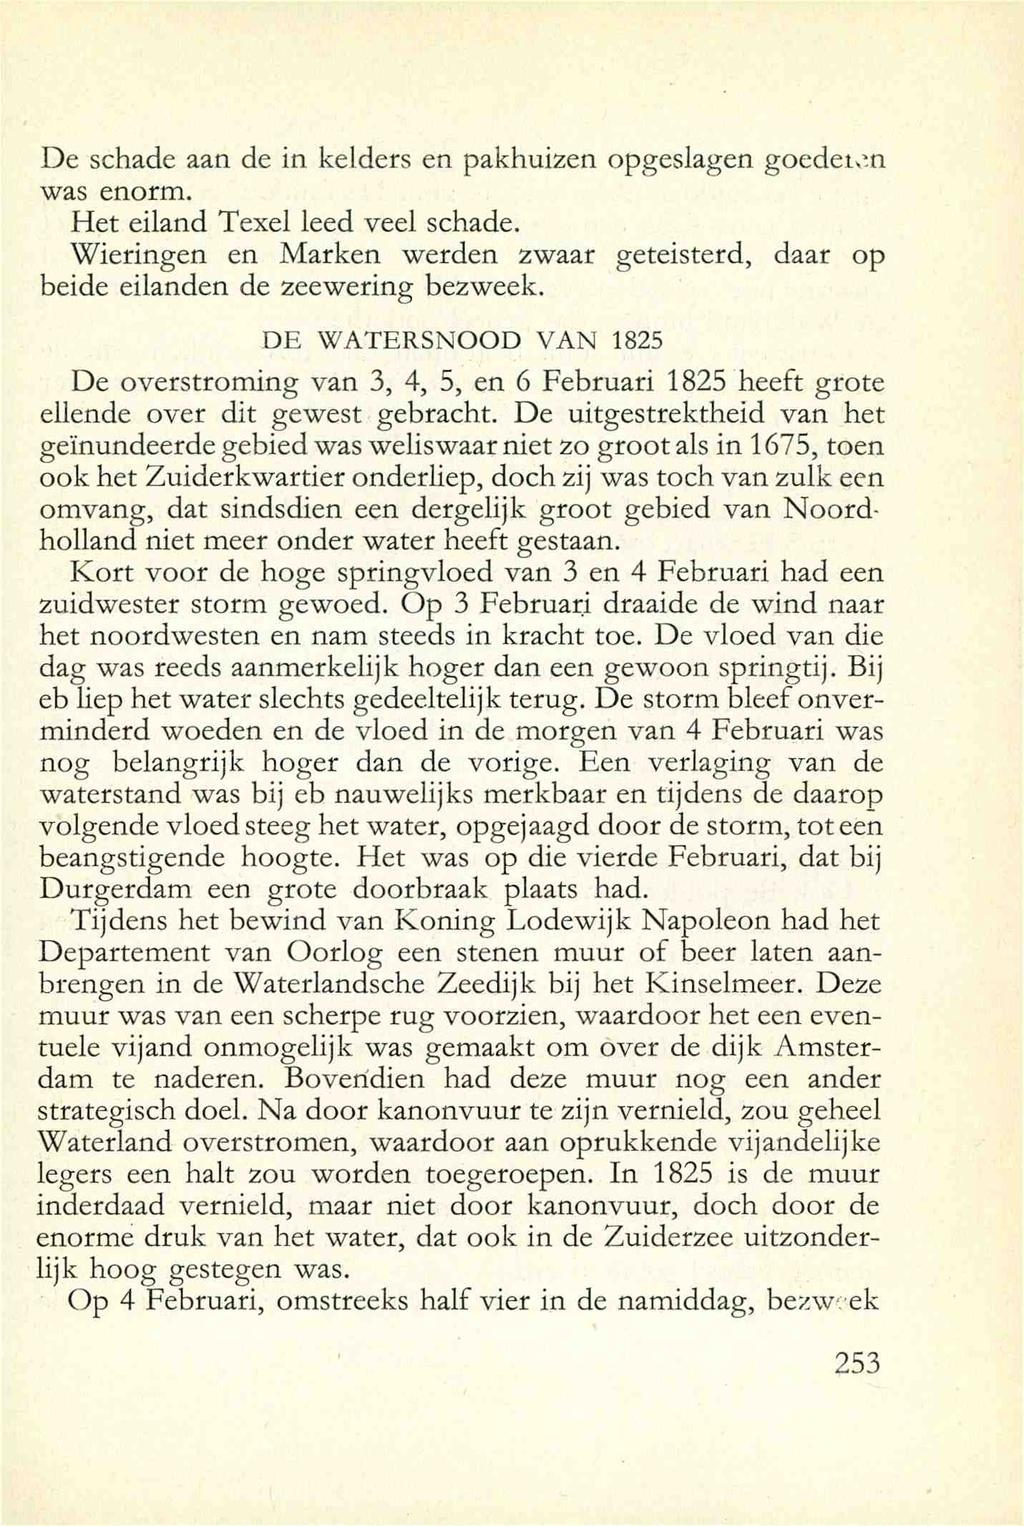 De schade aan de in kelders en pakhuizen opgesiagen goedeion was enorm. Het eiland Texel leed veel schade. Wieringen en Marken werden zwaar geteisterd, daar op beide eilanden de zeewering bezweek.